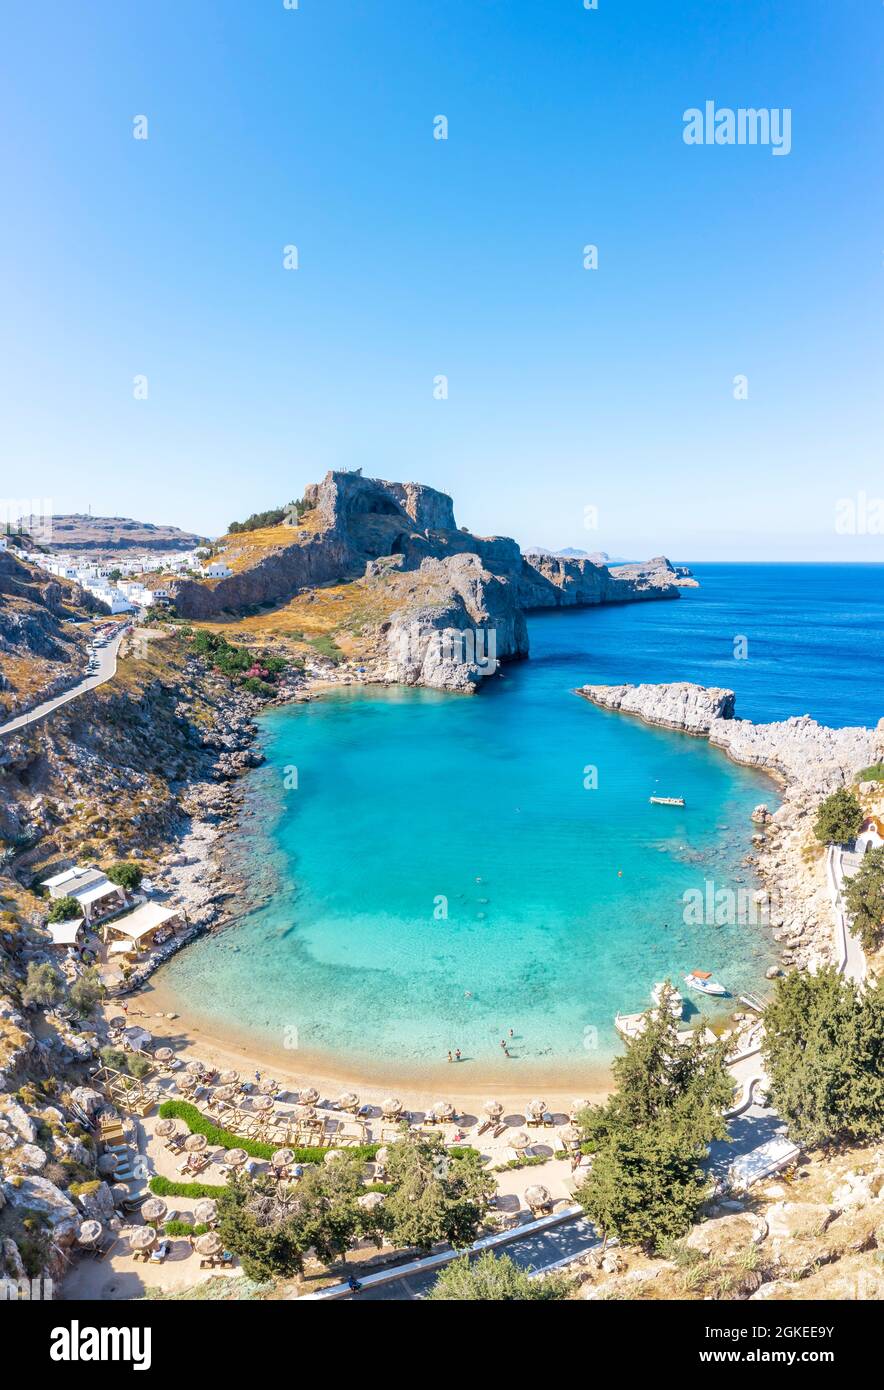 Mare turchese e spiaggia sabbiosa, Acropoli di Lindos, antica cittadella su una scogliera ripida, Lindos, Rodi, Dodecaneso, Grecia Foto Stock